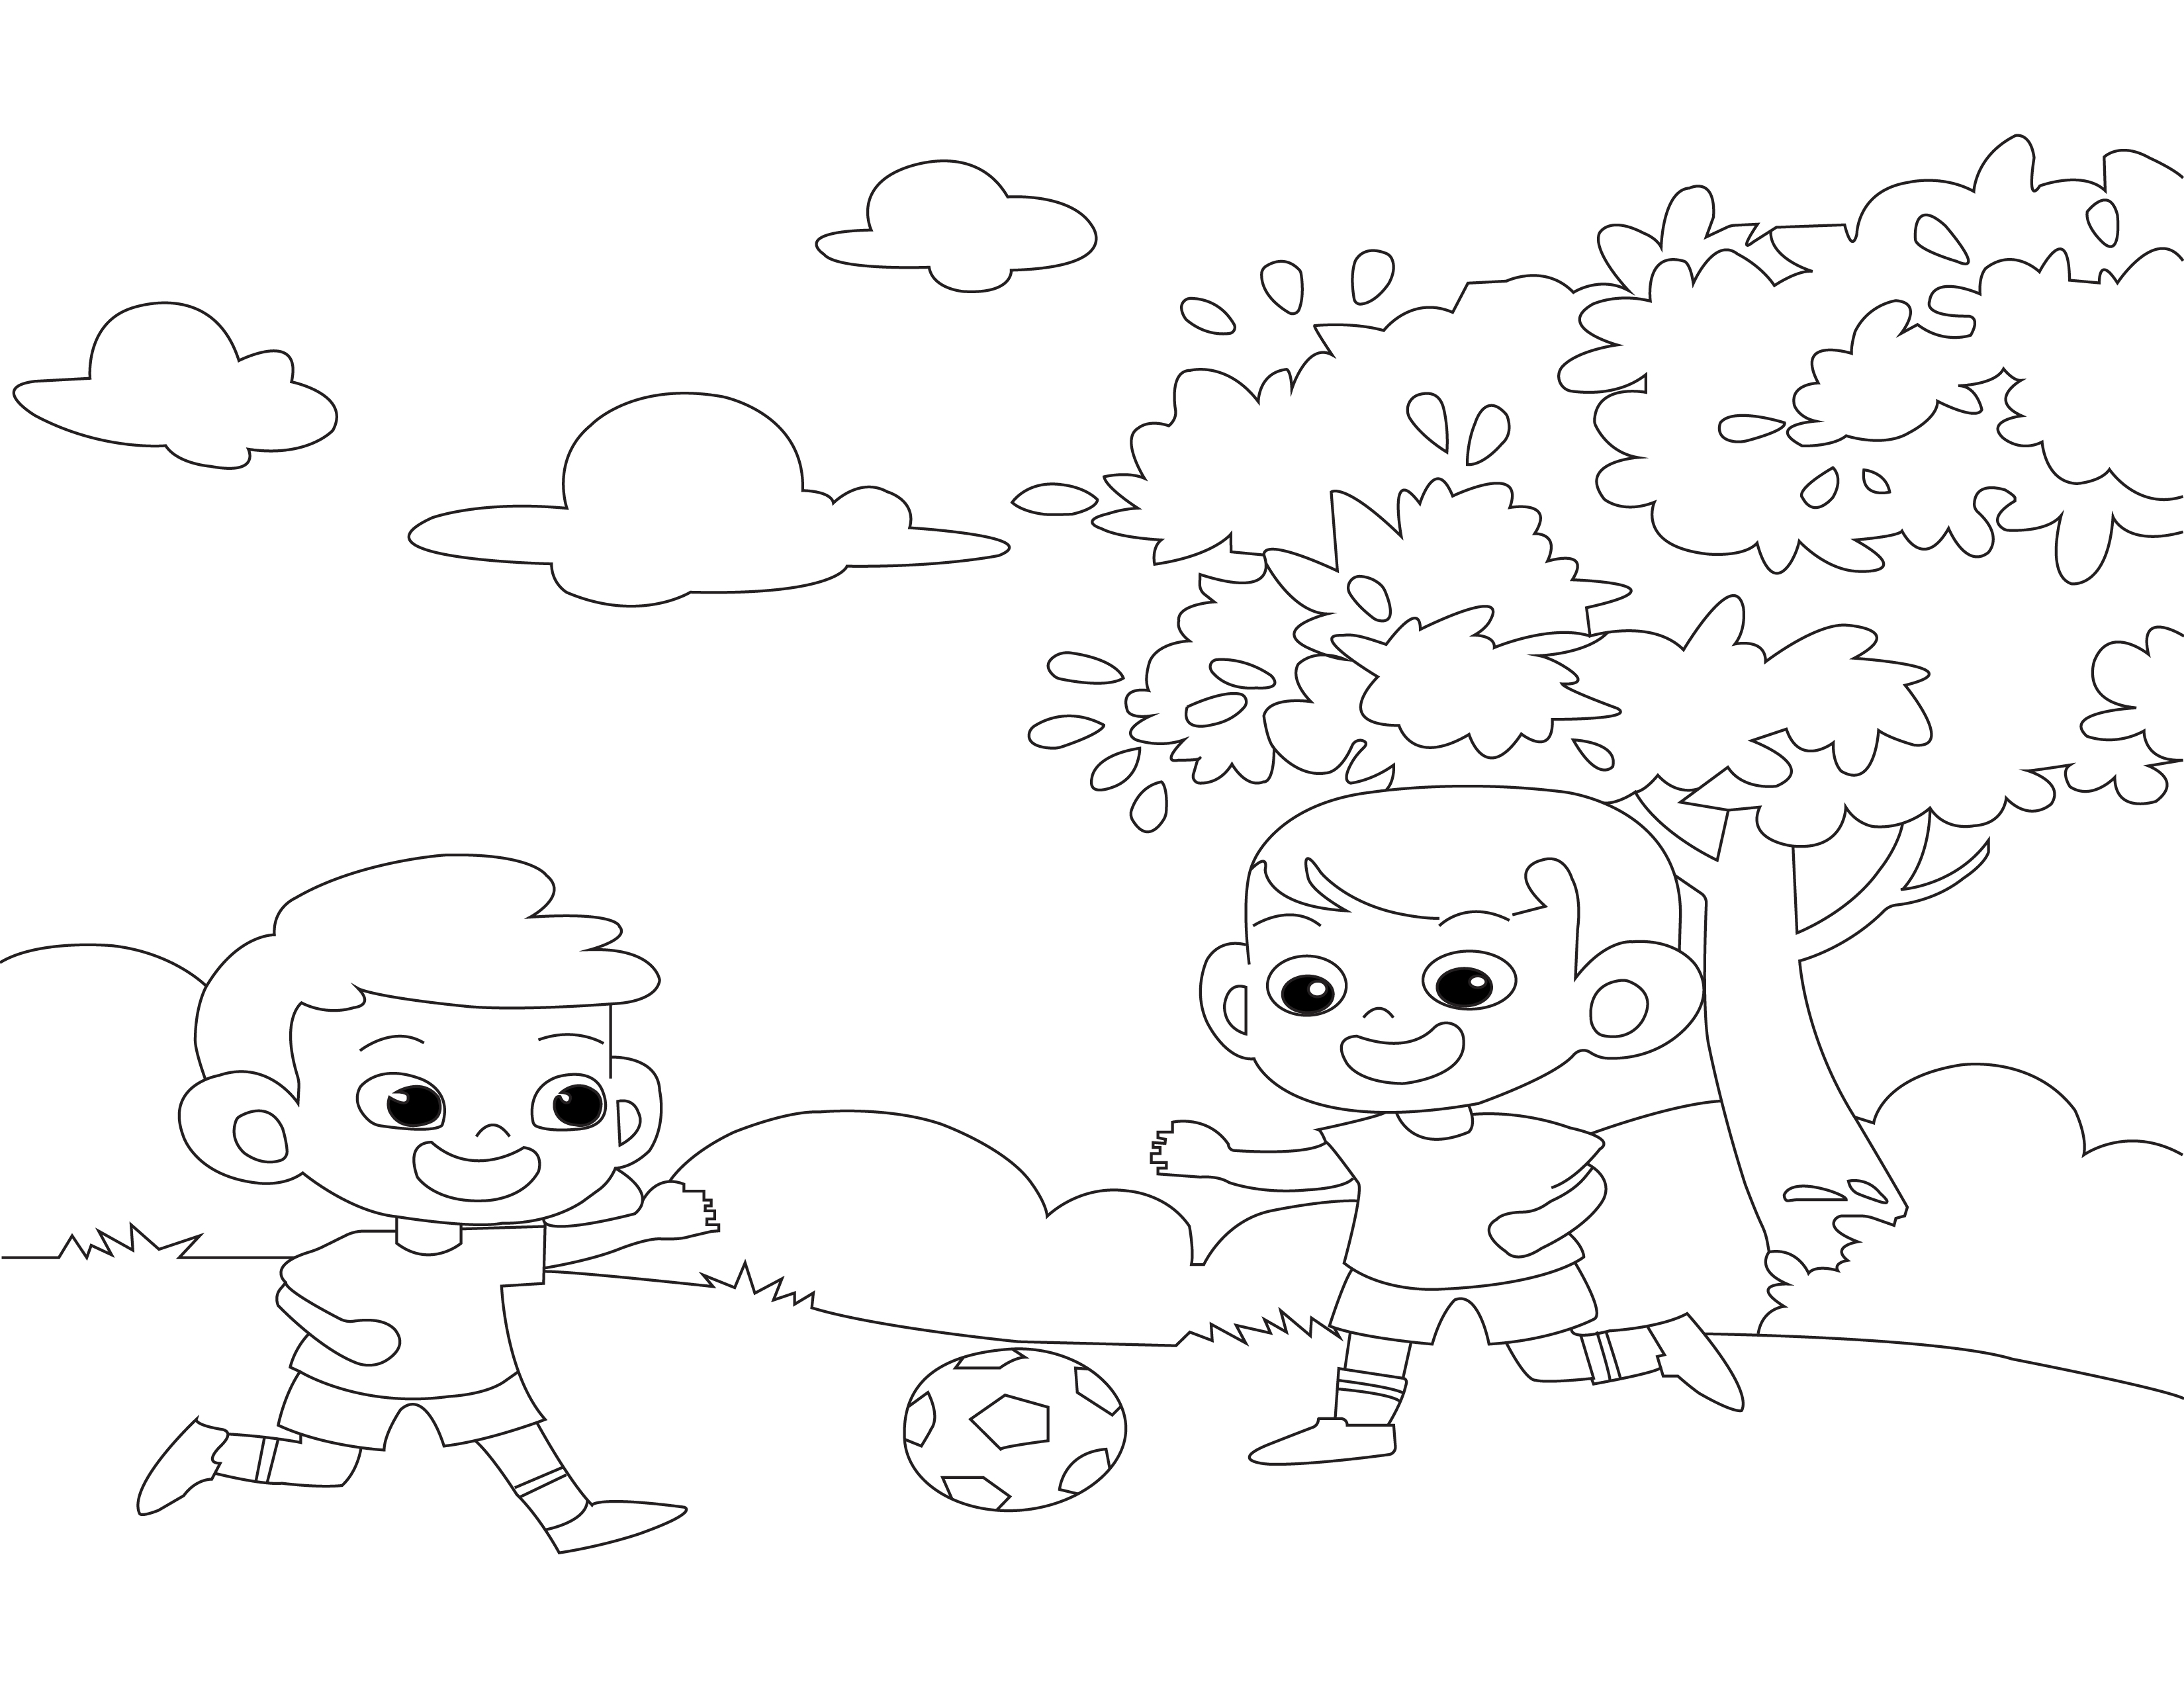 Página para colorear de niño jugando al fútbol